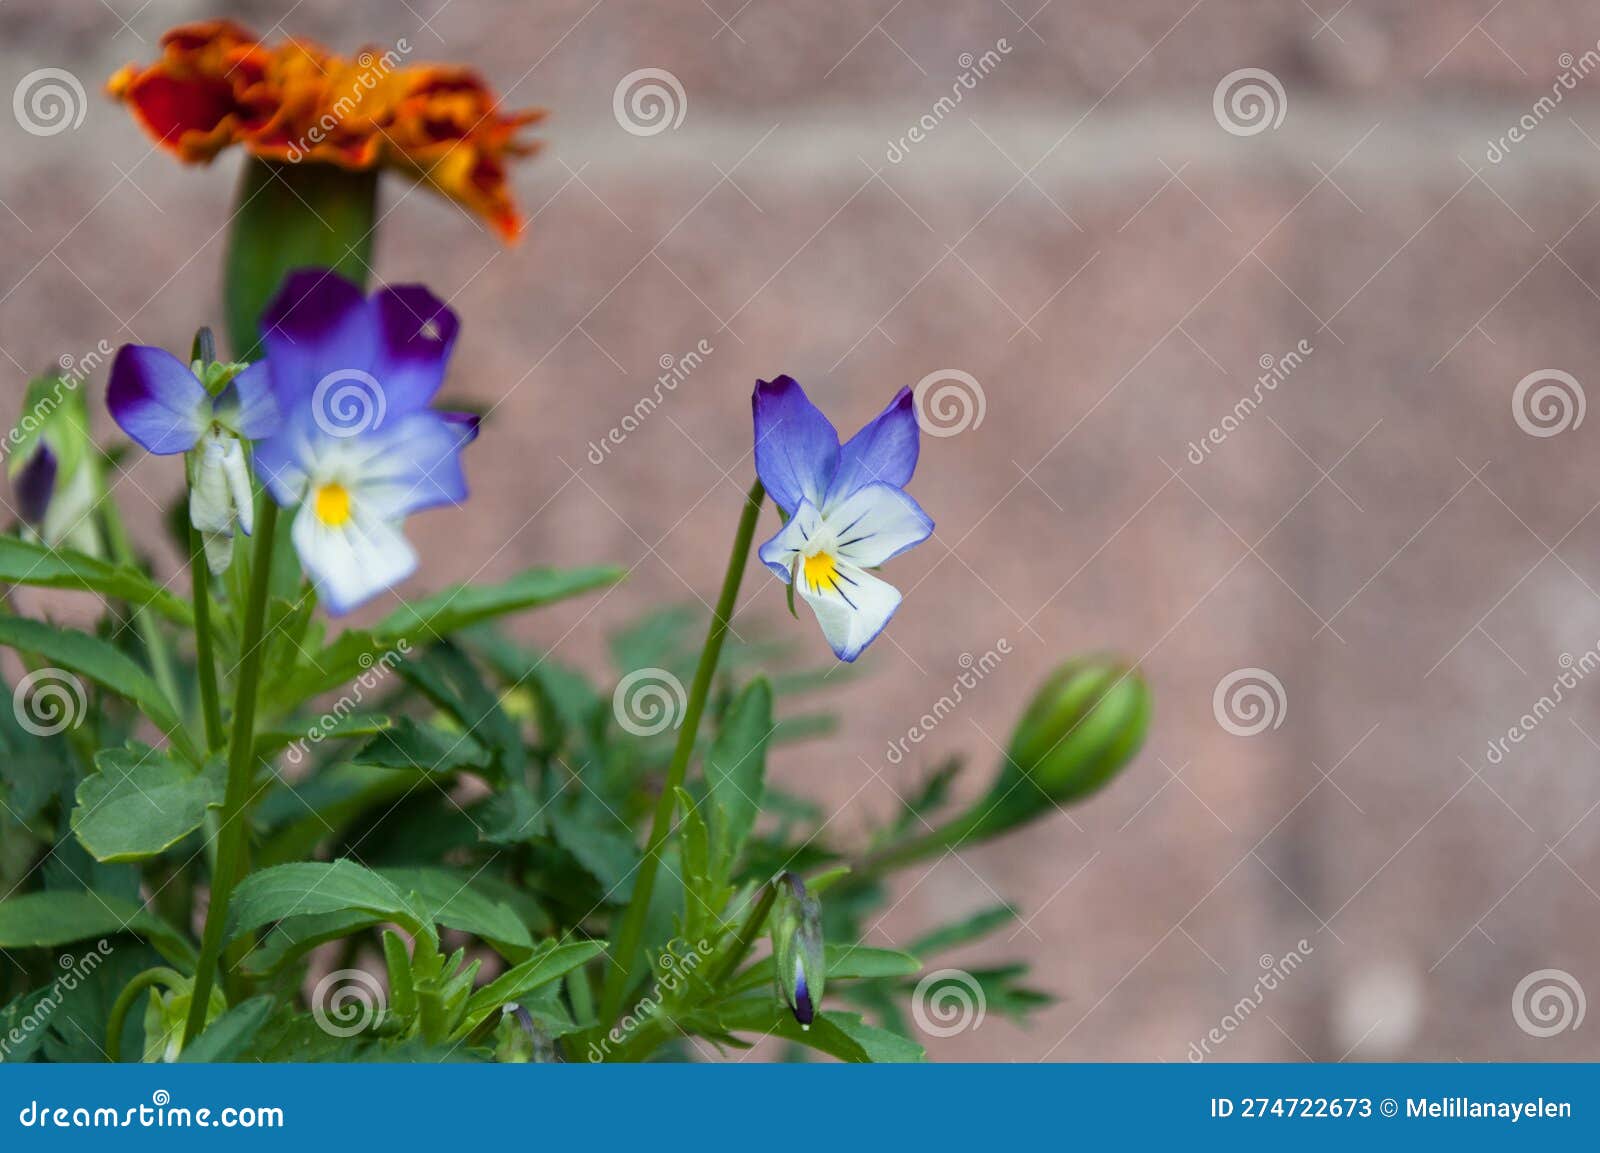 pansy flowers, viola x wittrockiana.